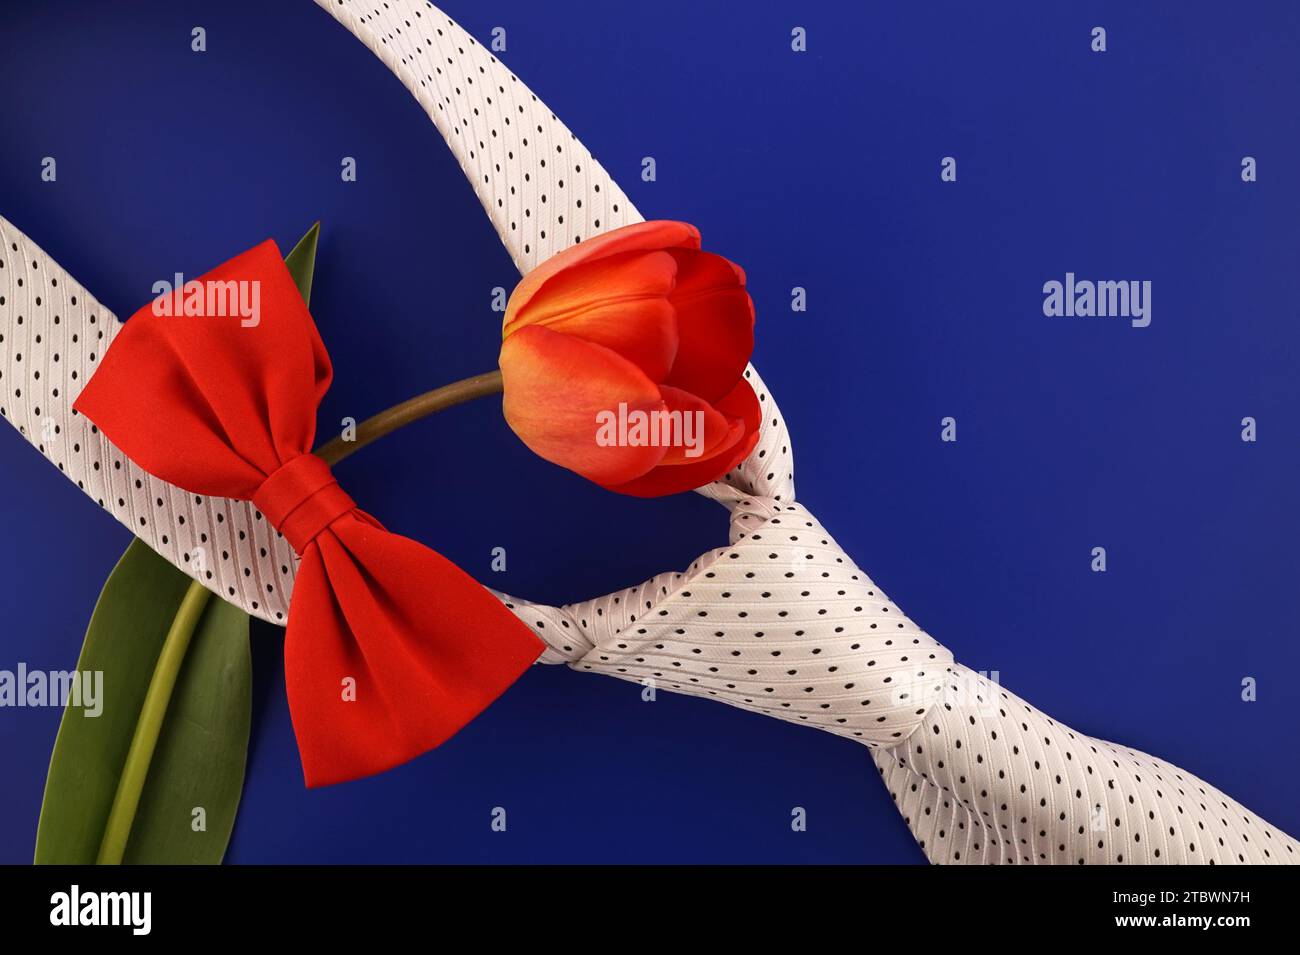 Cravatta da collo e colorata cravatta rossa con tulipano rosso su sfondo blu con spazio per la copia del tuo saluto in una vita still lay piatta Foto Stock